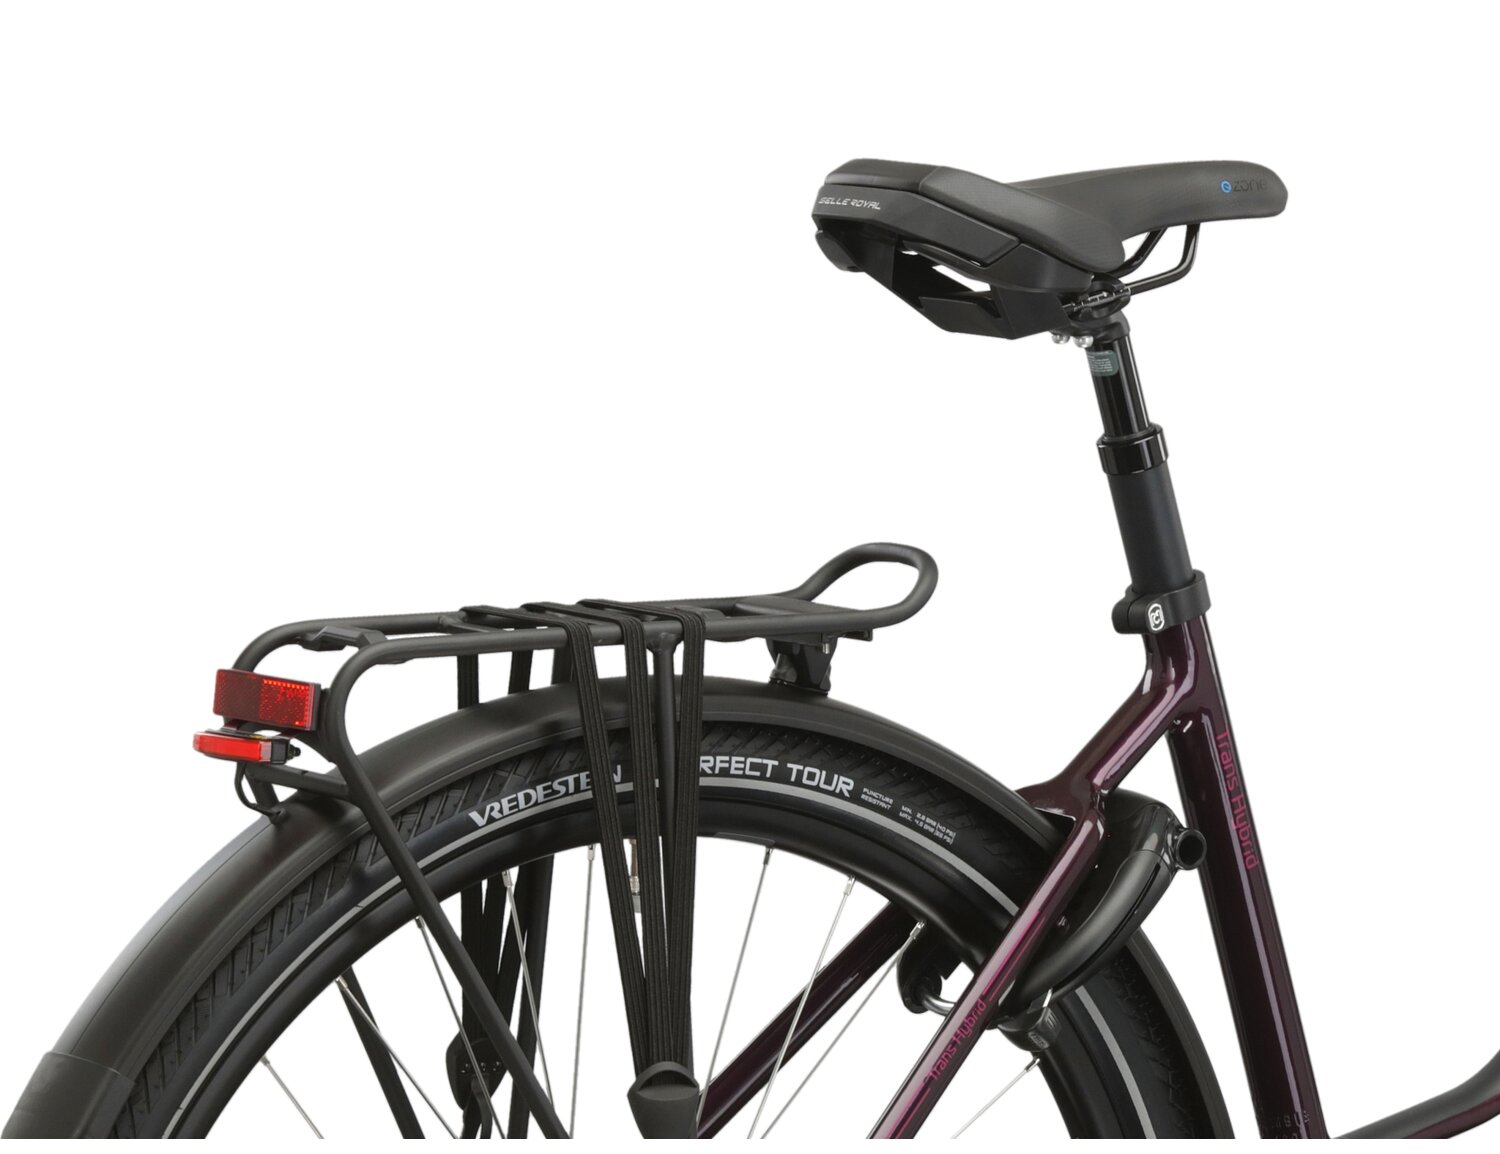  Bagażnik rowerowy, siodełko Selle Royale oraz zintegrowane oświetlenie w rowerze elektrcyznym Kross Trans Hybrid Prestige 